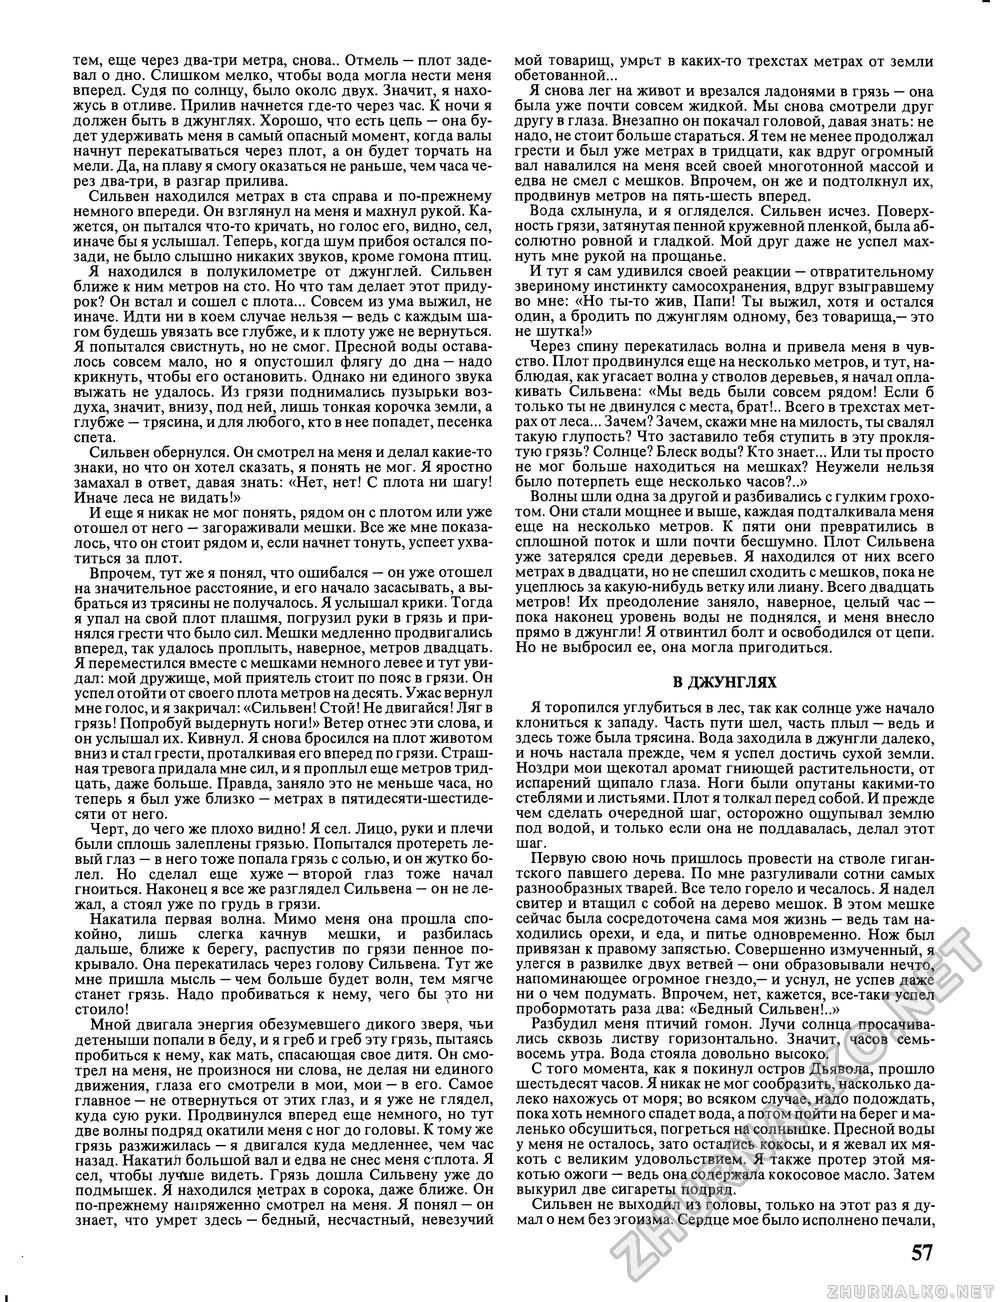 Вокруг света 1992-11, страница 59